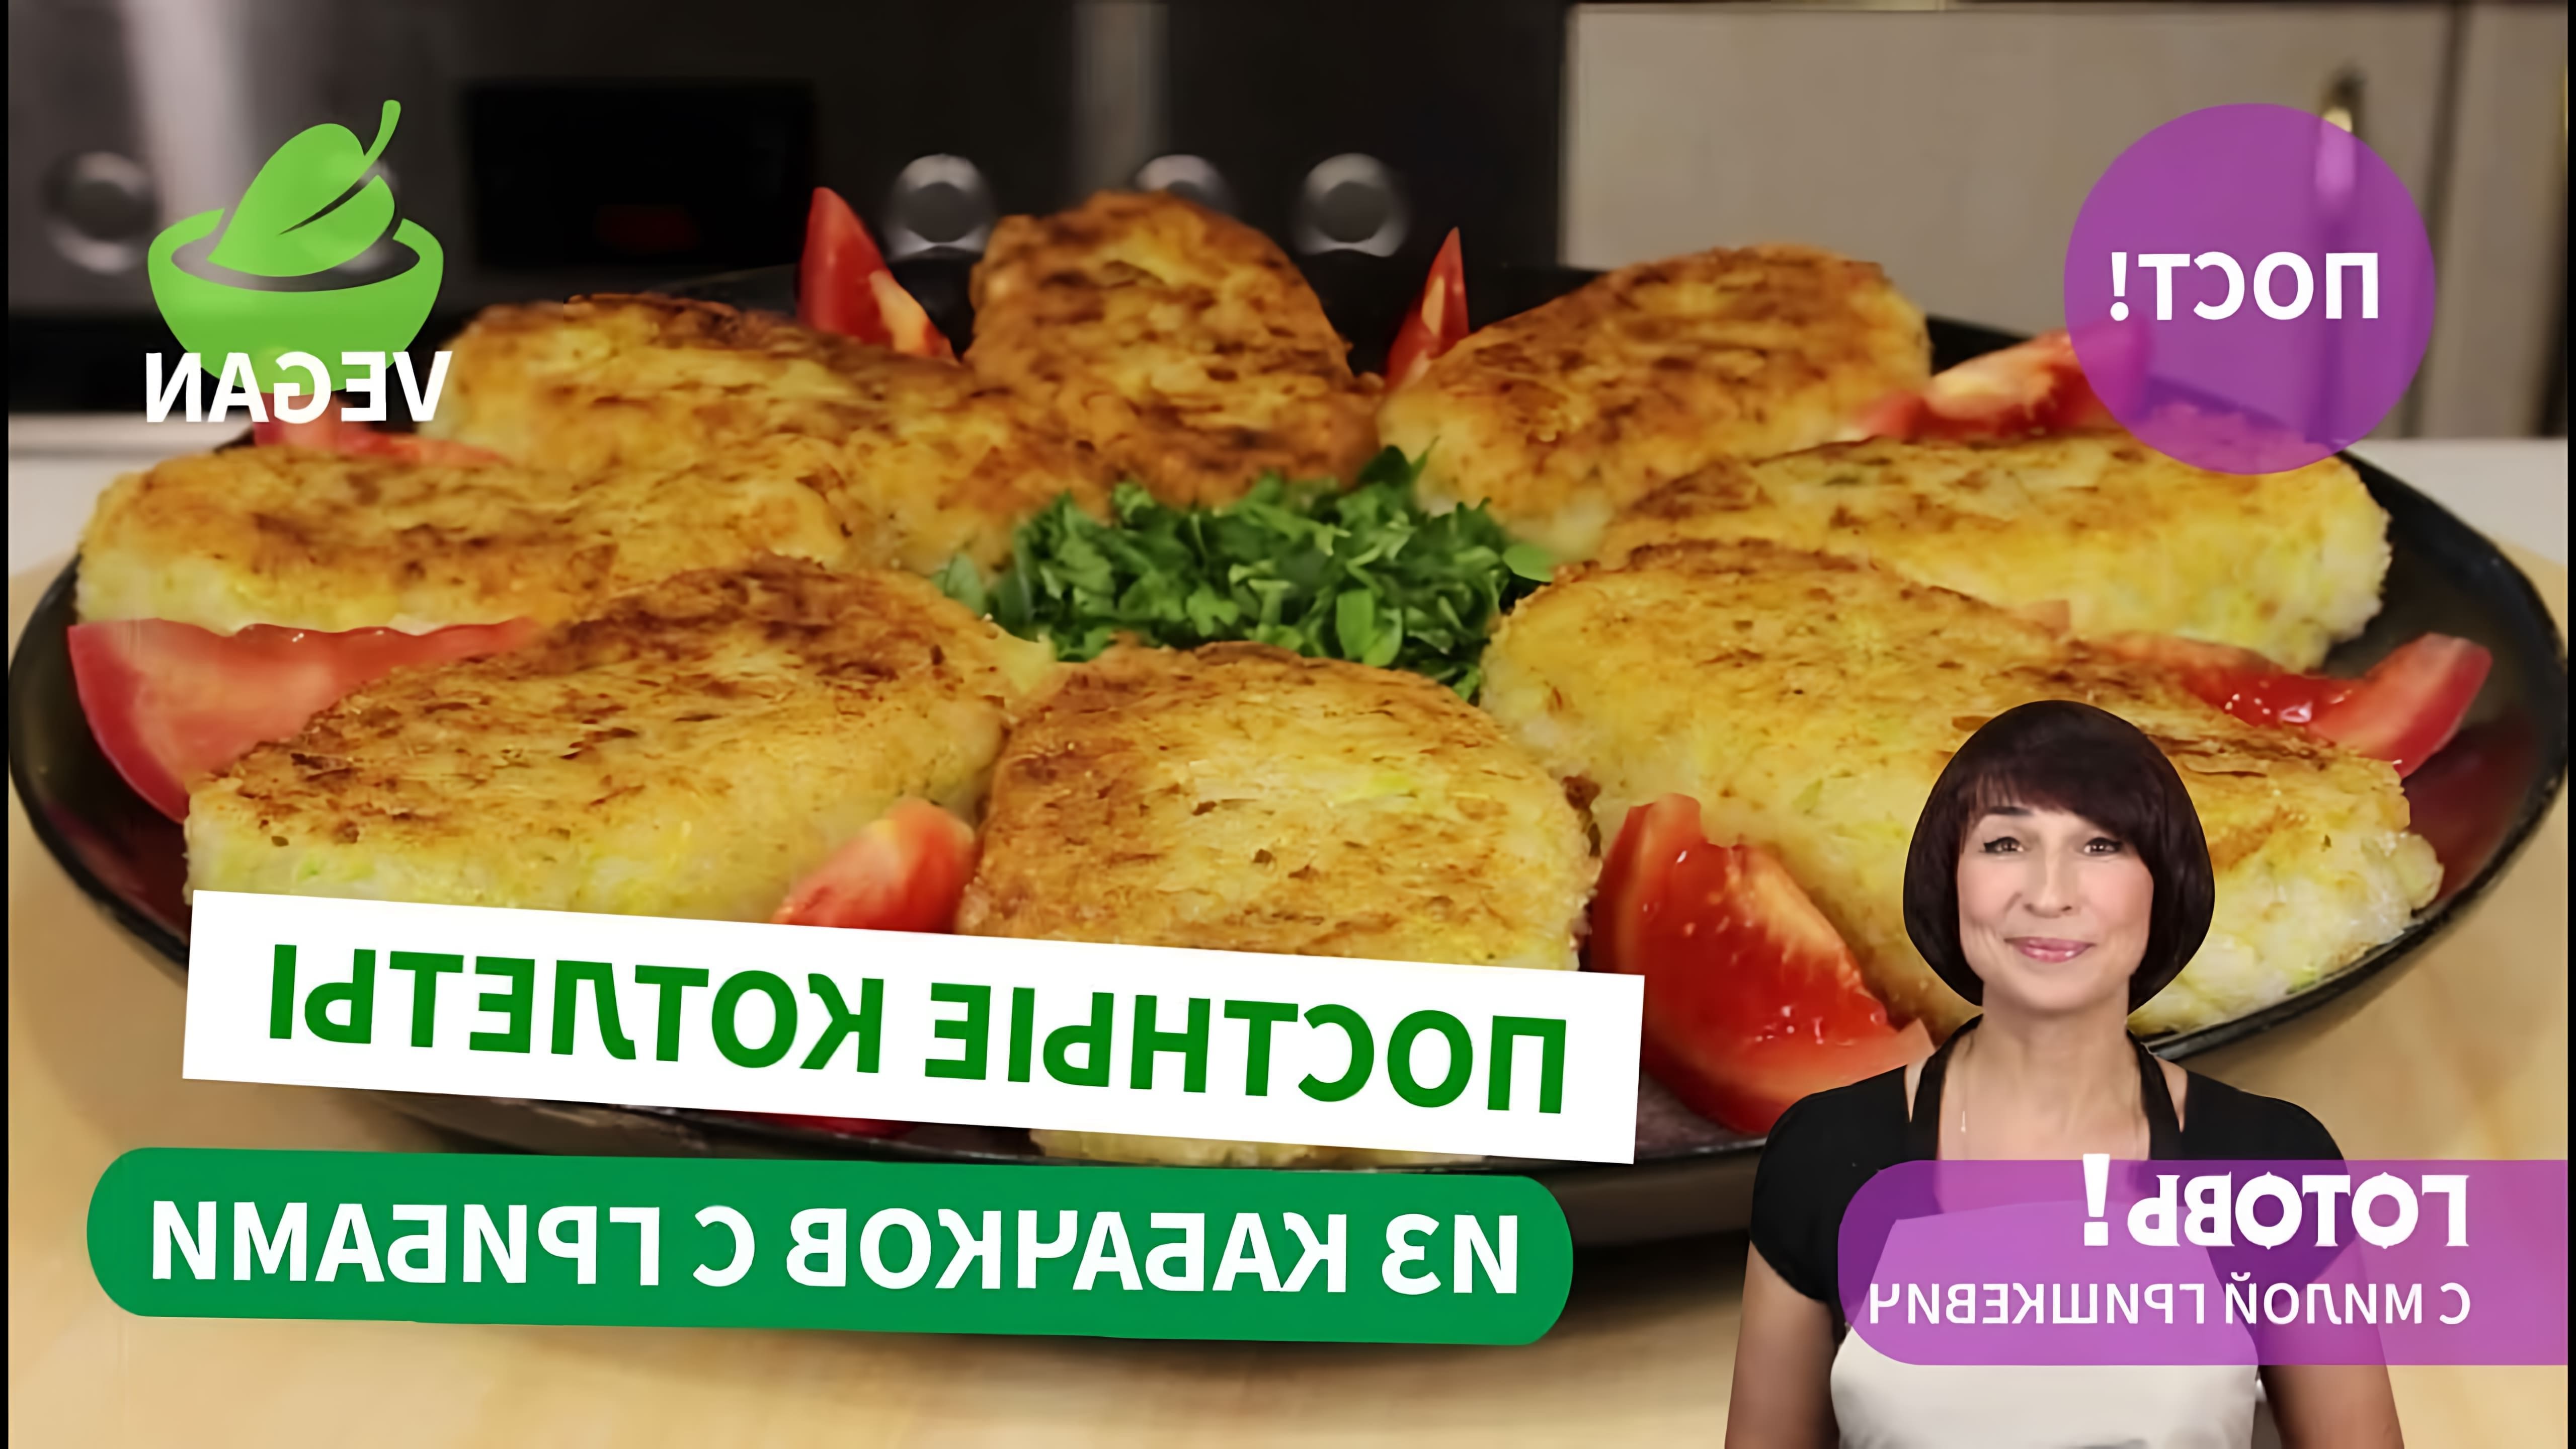 В этом видео демонстрируется рецепт постных котлет из кабачков и риса с начинкой из грибов